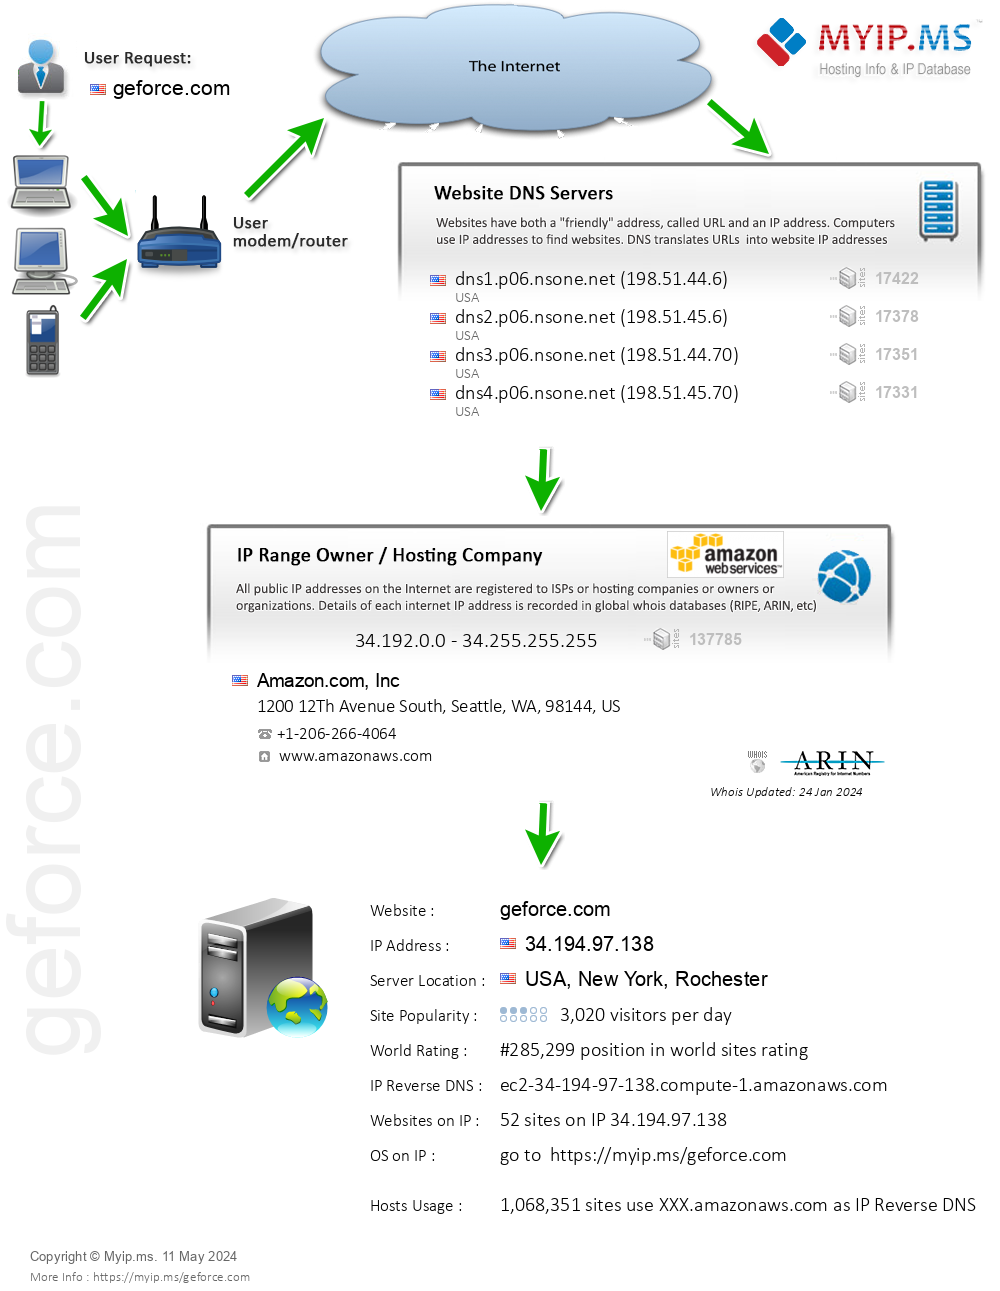 Geforce.com - Website Hosting Visual IP Diagram